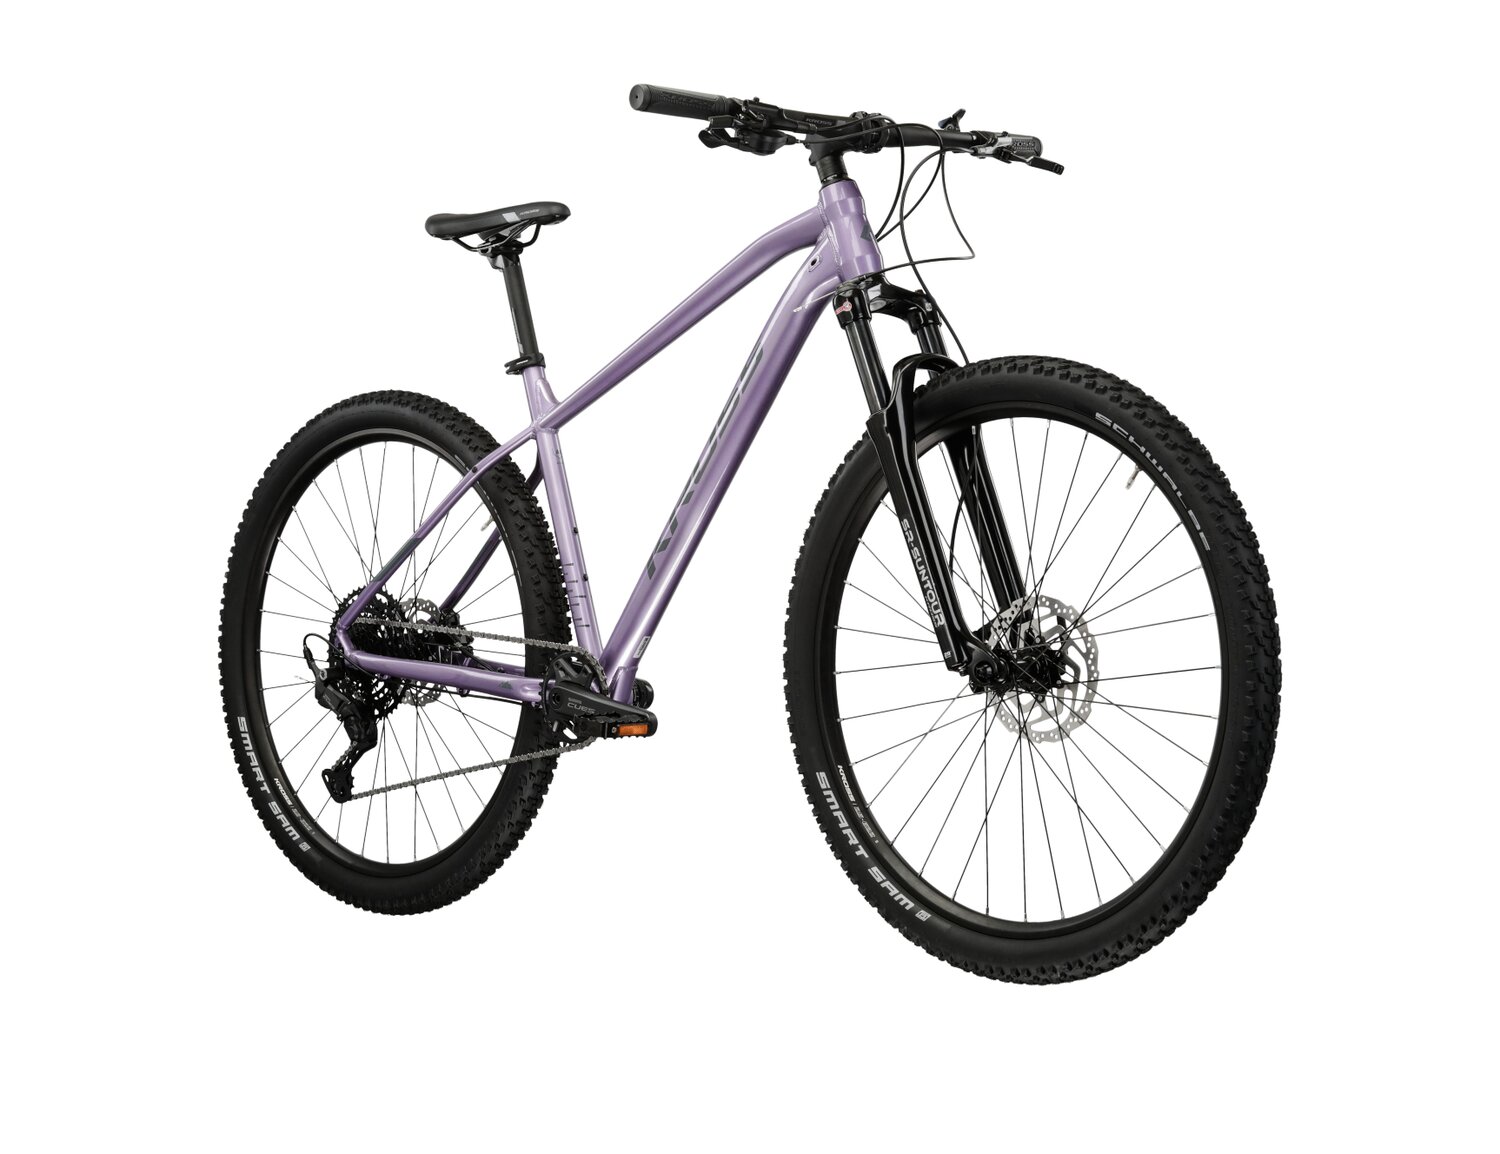  Damski rower górski MTB XC KROSS Level 4.0 na aluminiowej ramie w kolorze fioletowym wyposażony w osprzęt Shimano